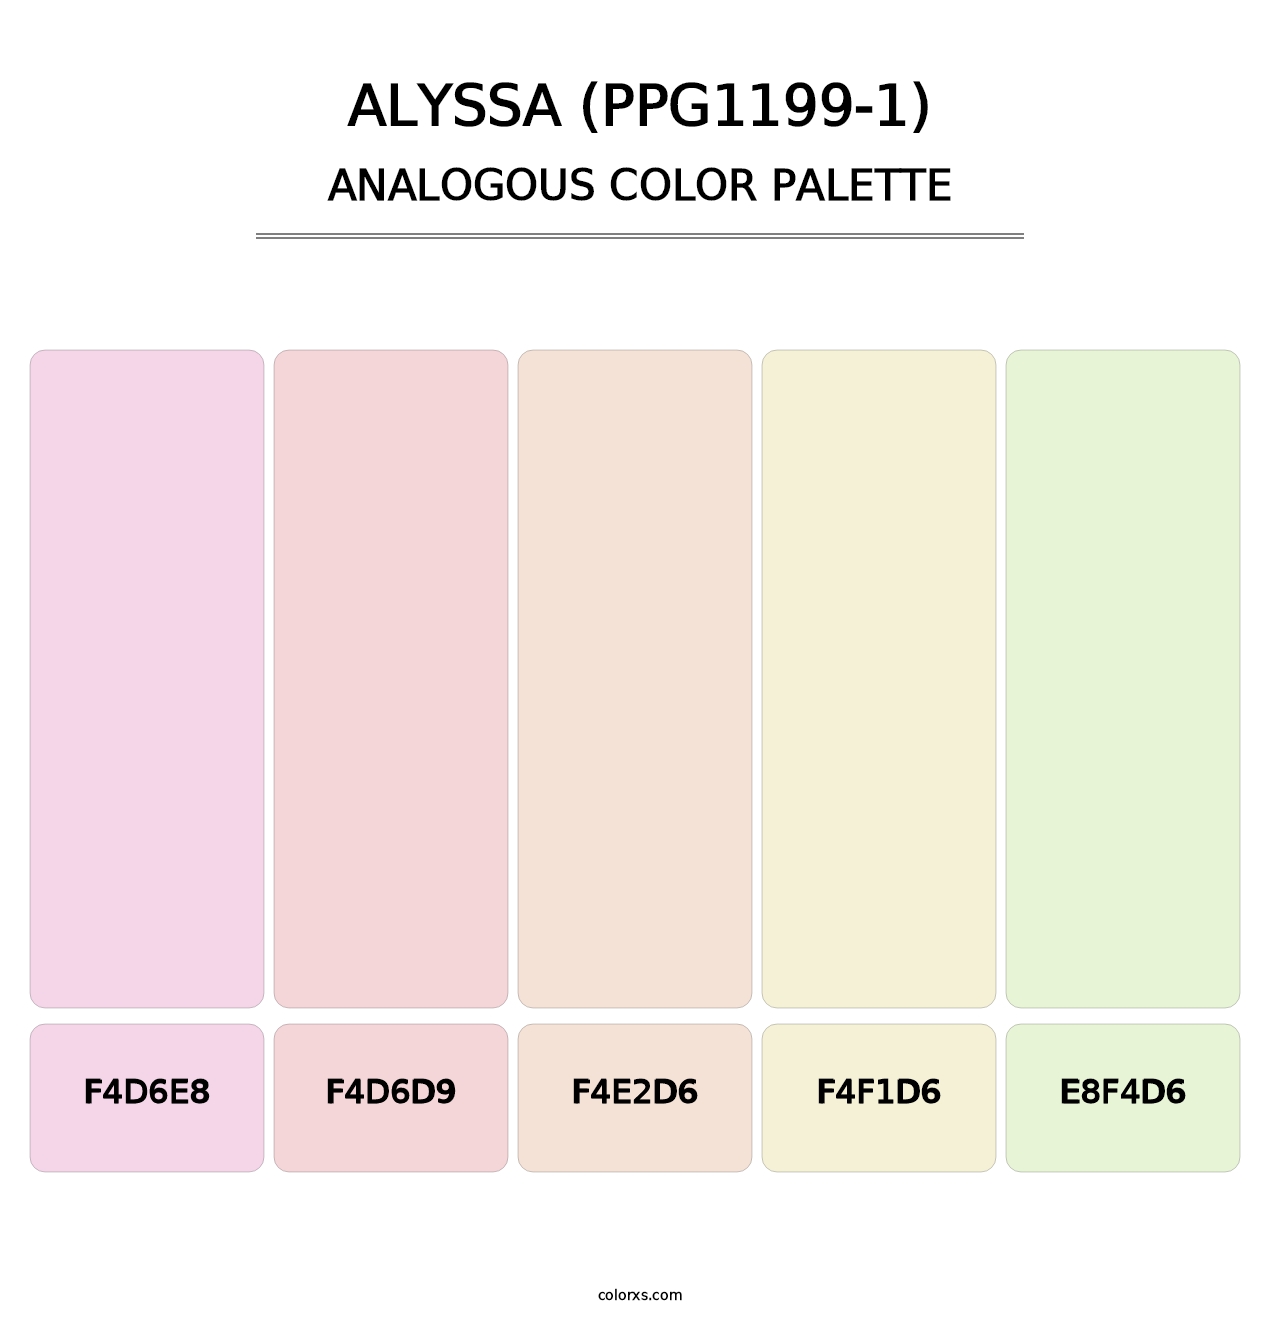 Alyssa (PPG1199-1) - Analogous Color Palette